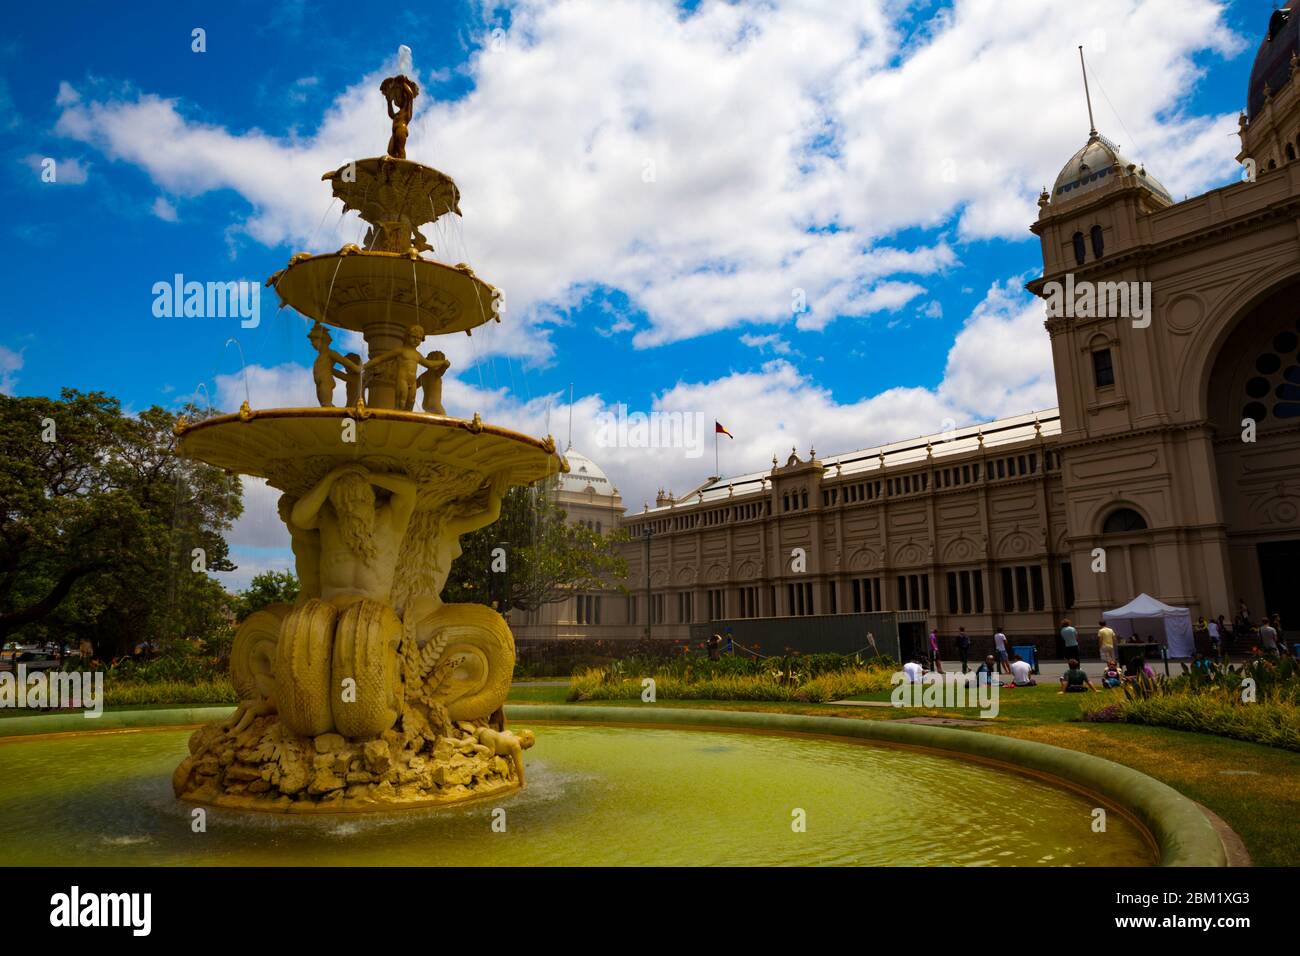 La fontana Hochgurtel di fronte al Royal Exhibition Building di Melbourne è stata progettata nel 1880 da Joseph Hochgurtel, un immigrato di Colonia, e hi Foto Stock